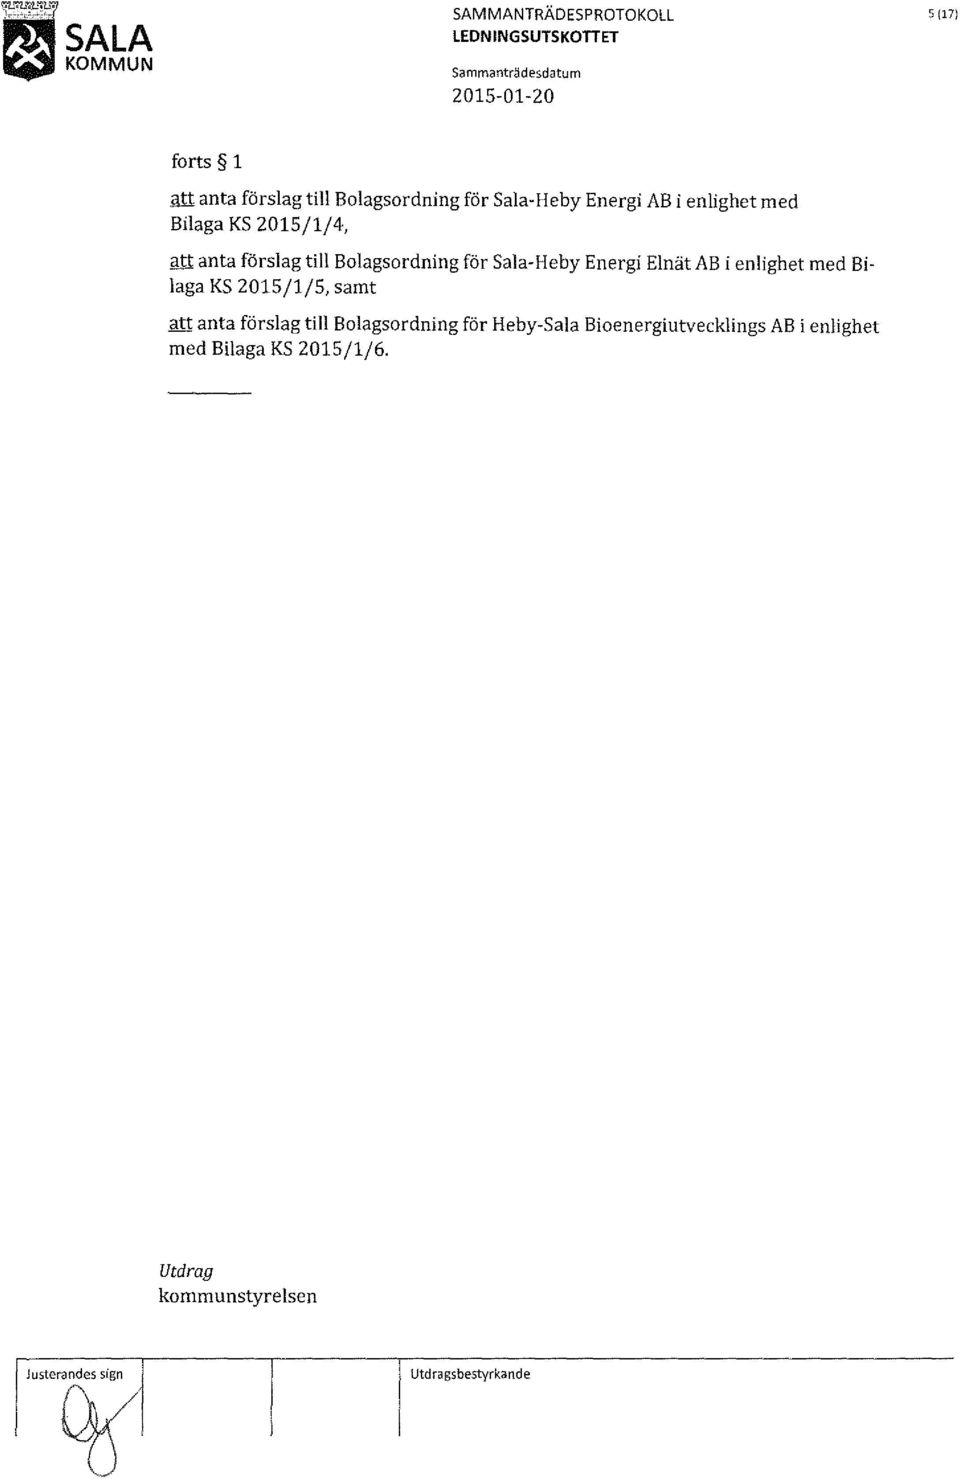 enlighet med Bilaga KS 2015/1/5, samt att anta förslag till Bolagsordning för Heby-Sala